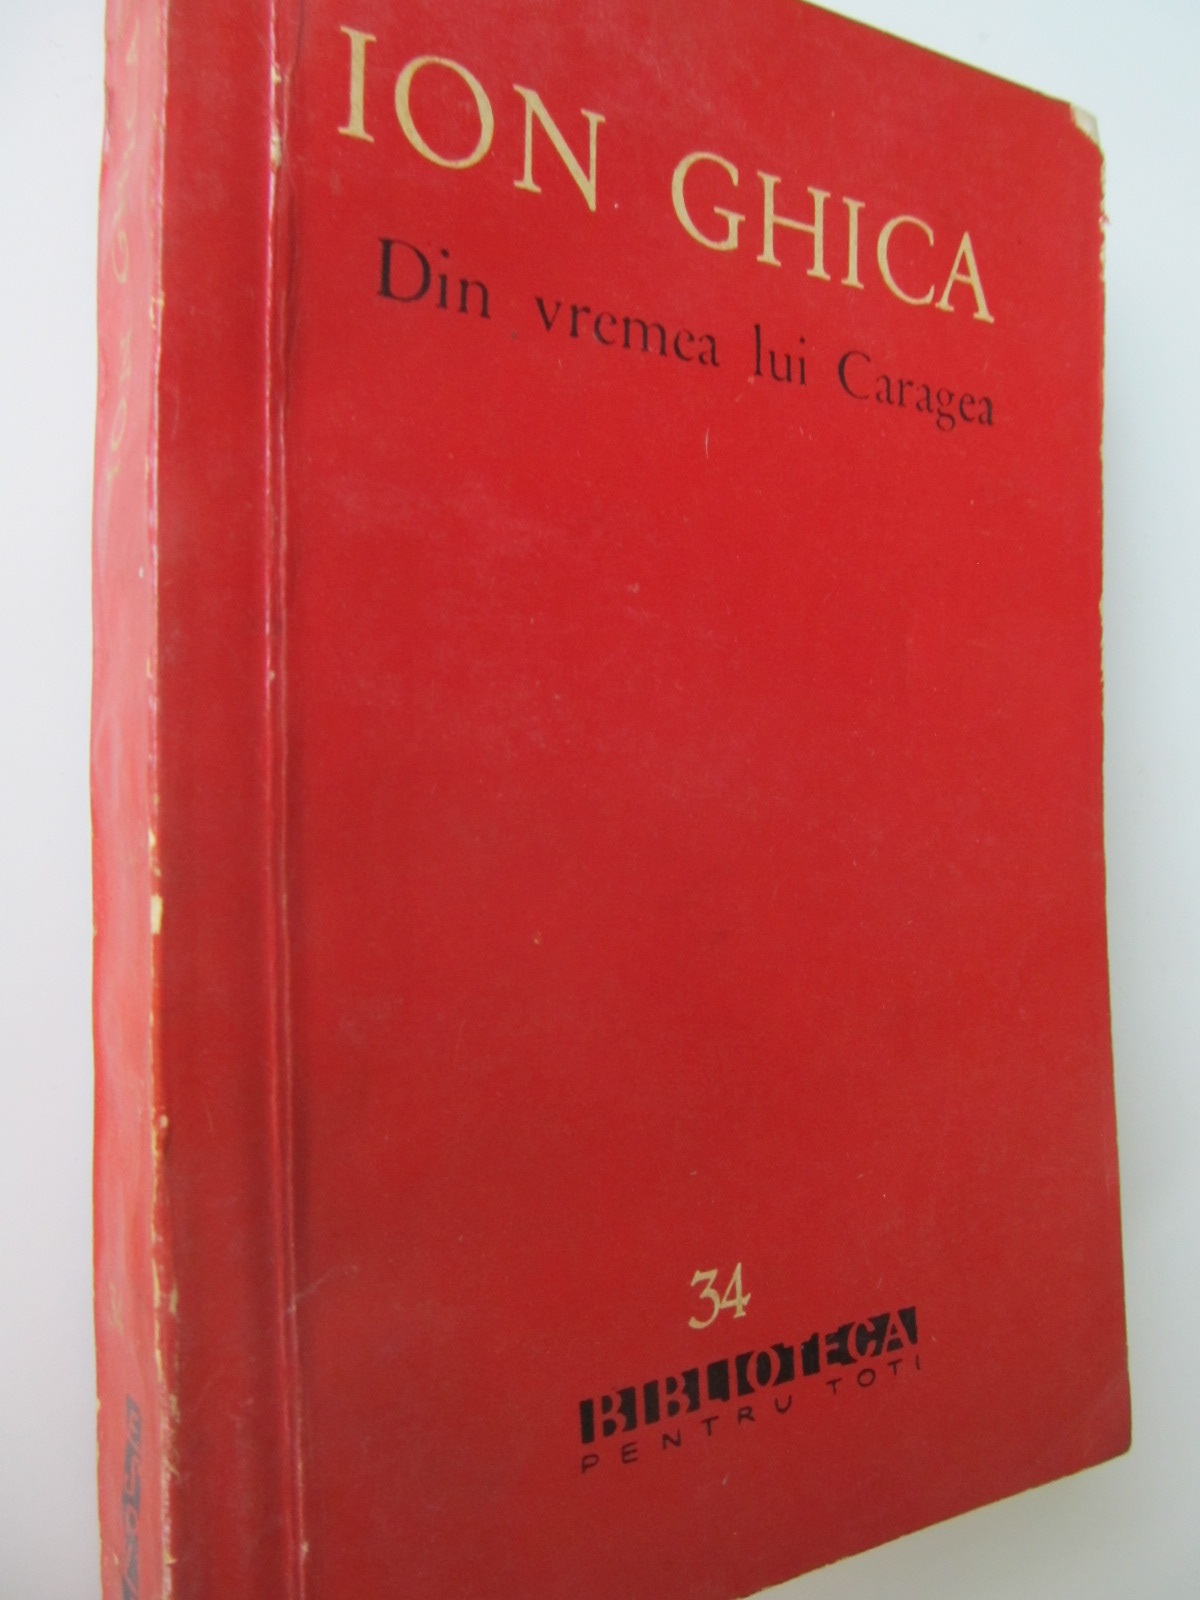 Din vremea lui Caragea - Ion Ghica | Detalii carte